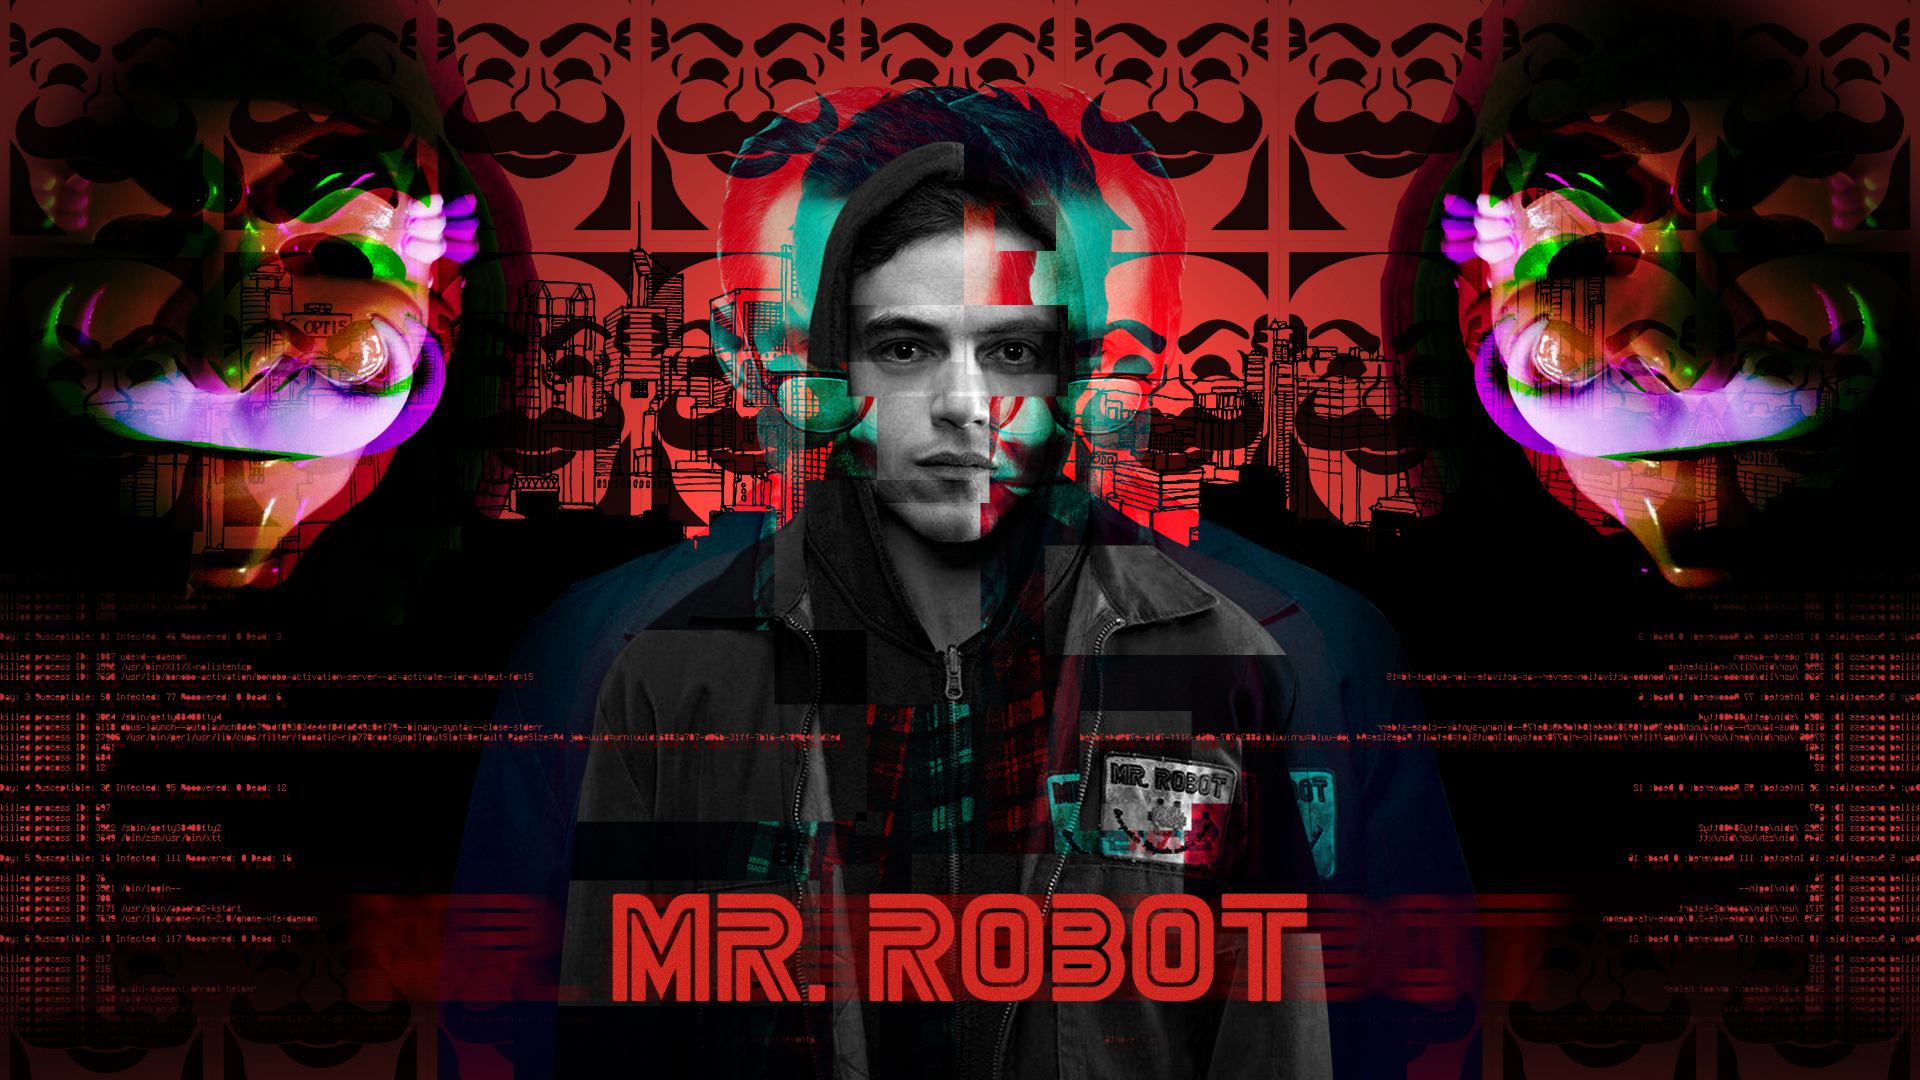 Mr. Robot Wallpaper 1920x1080 - mr robot post - Imgur